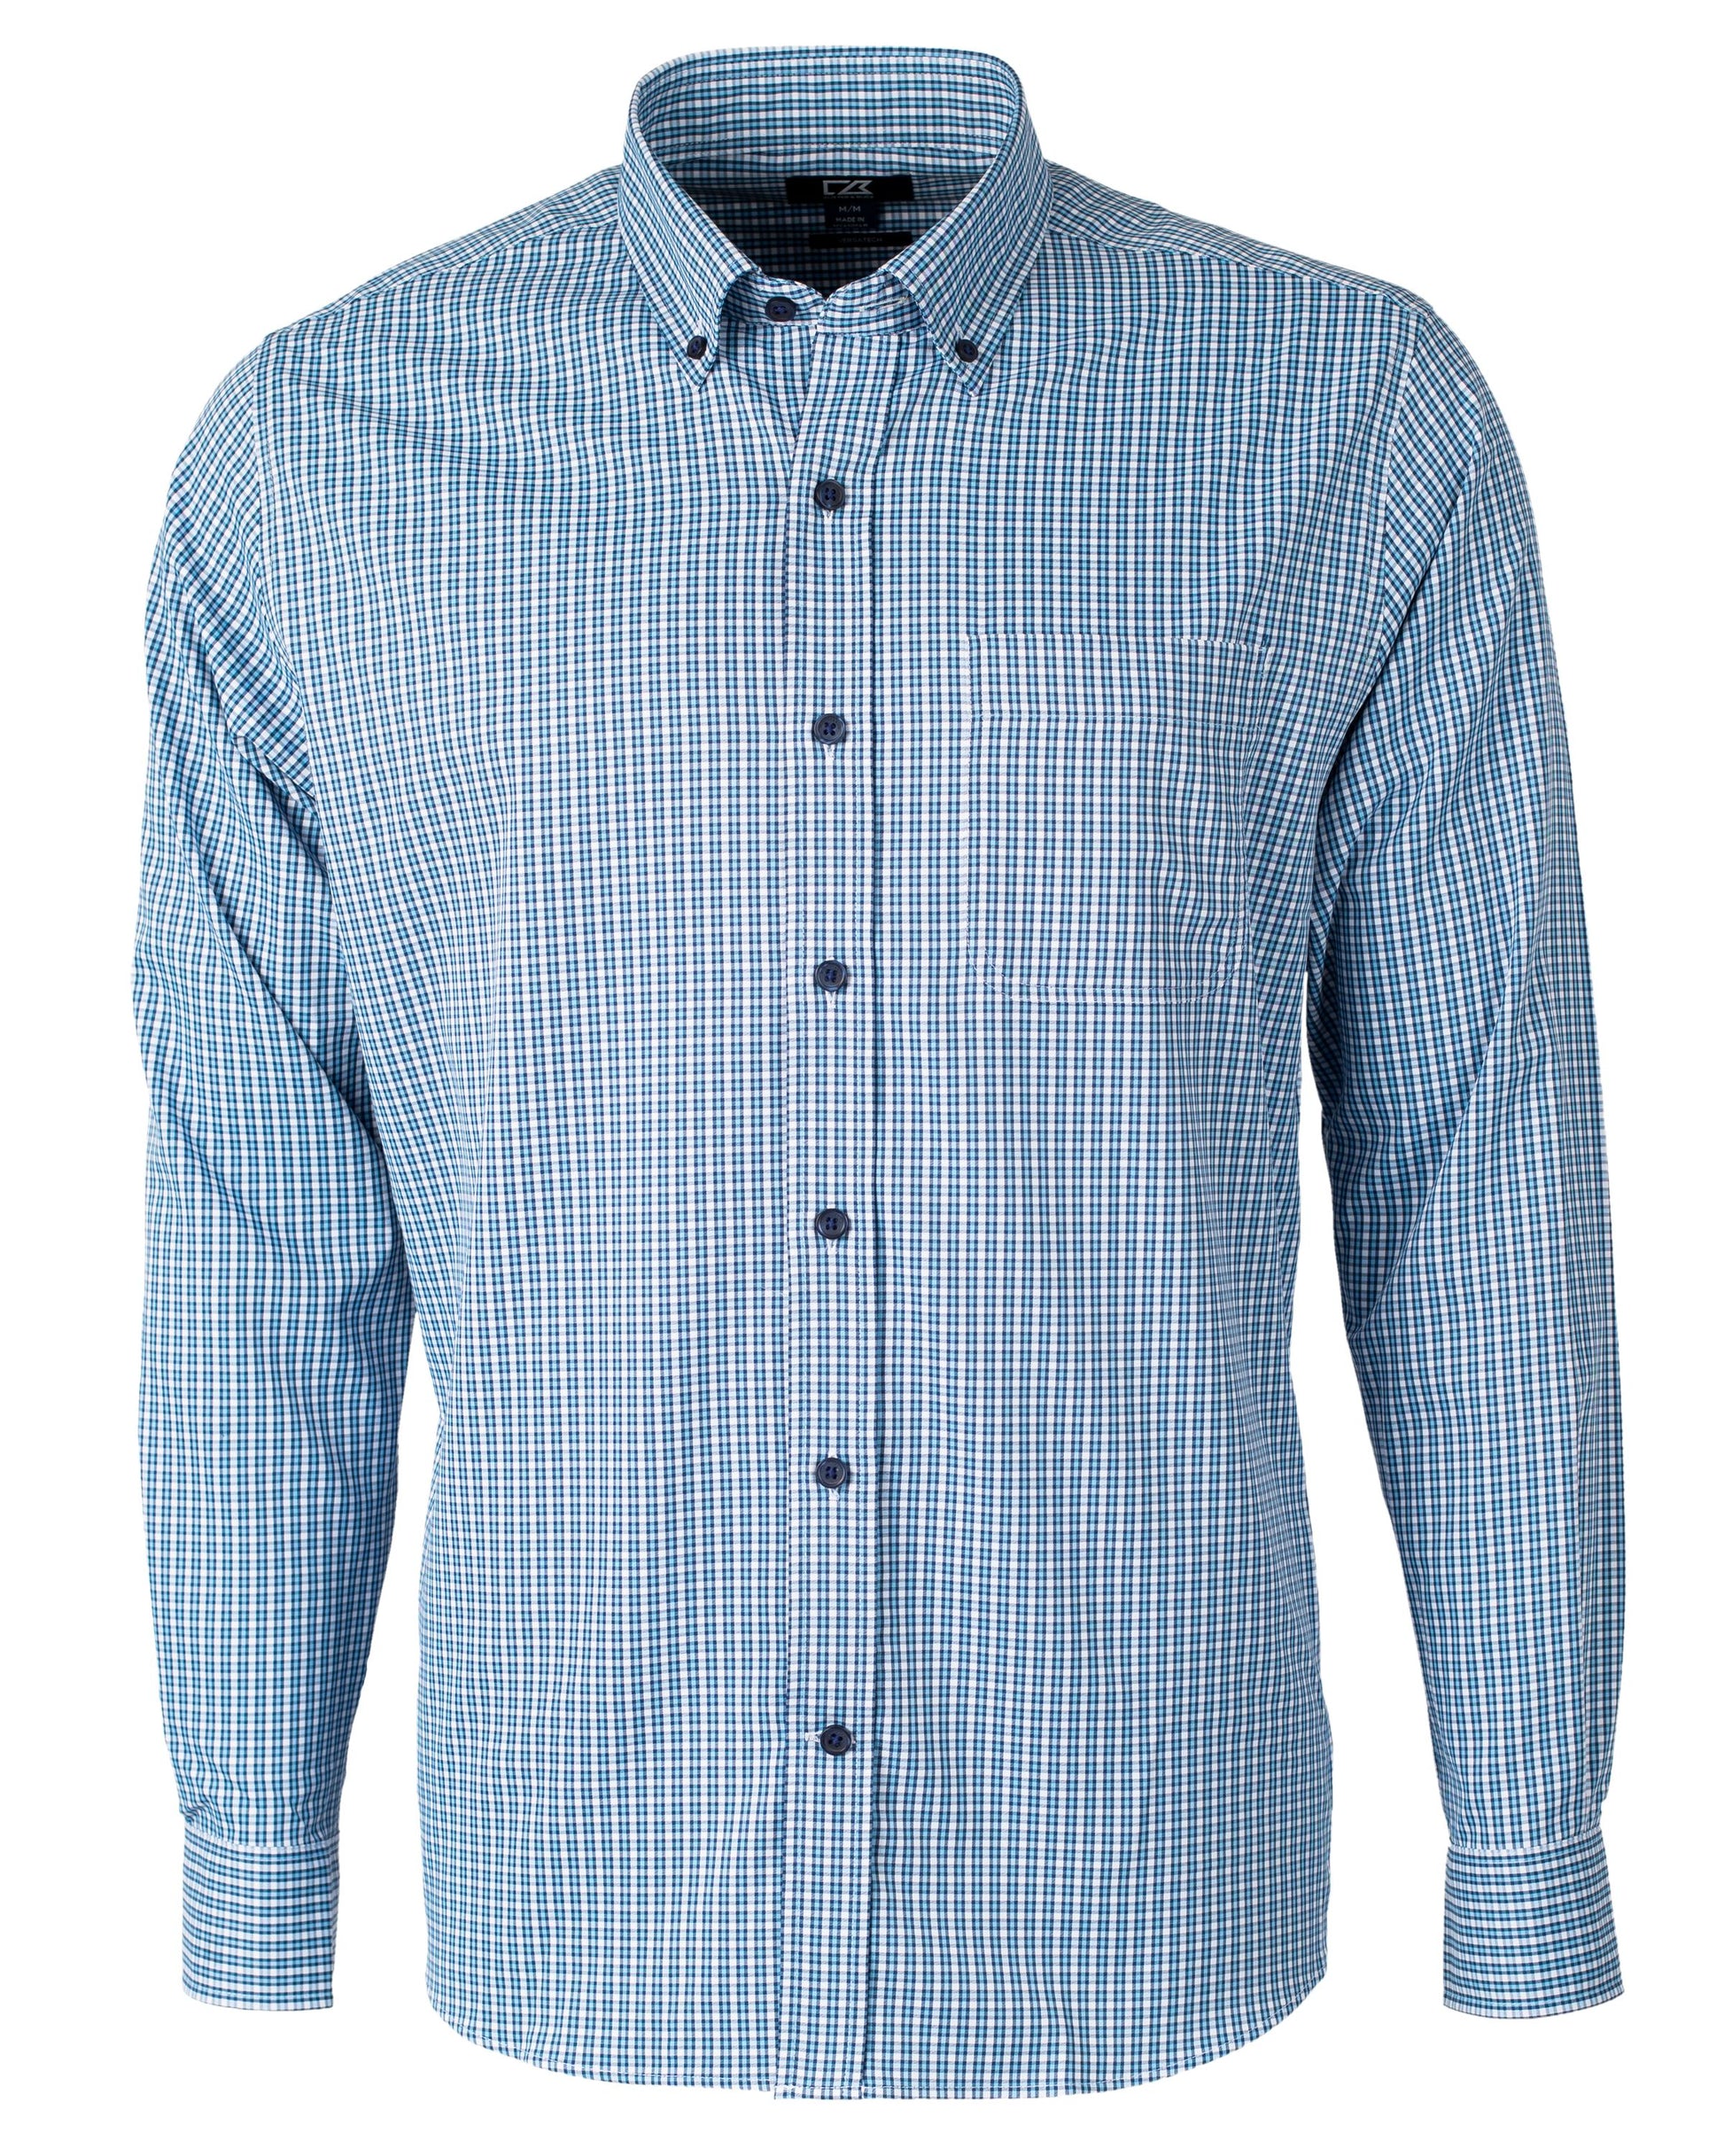 Cutter & Buck Versatech Multi Check Stretch Dress Shirt Atlas Blue ...